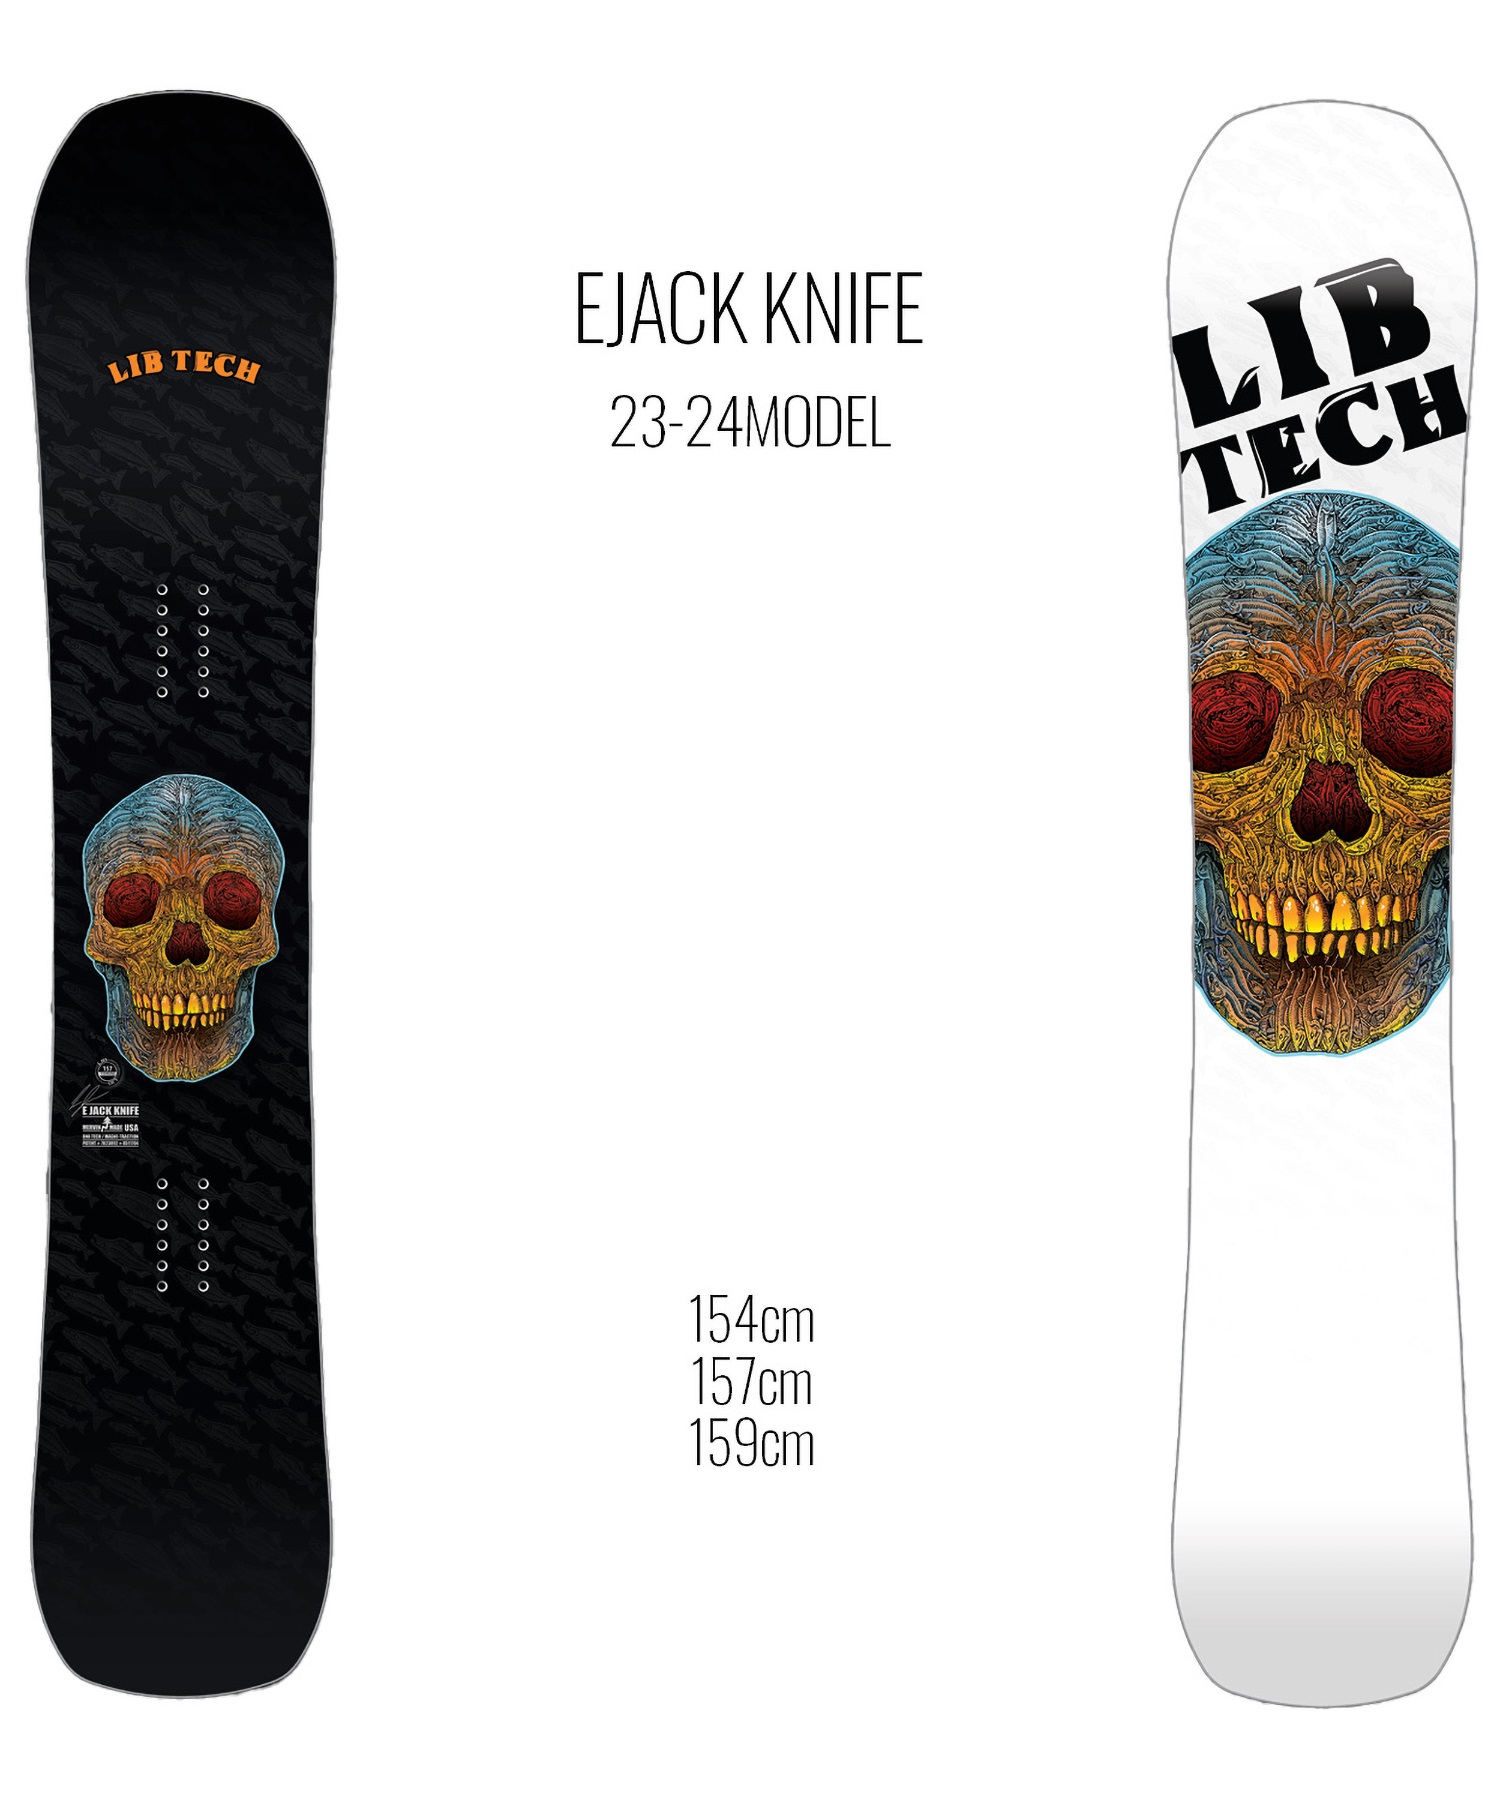 スノーボード 板 メンズ LIBTECH リブテック EJACK KNIFE 23-24モデル 